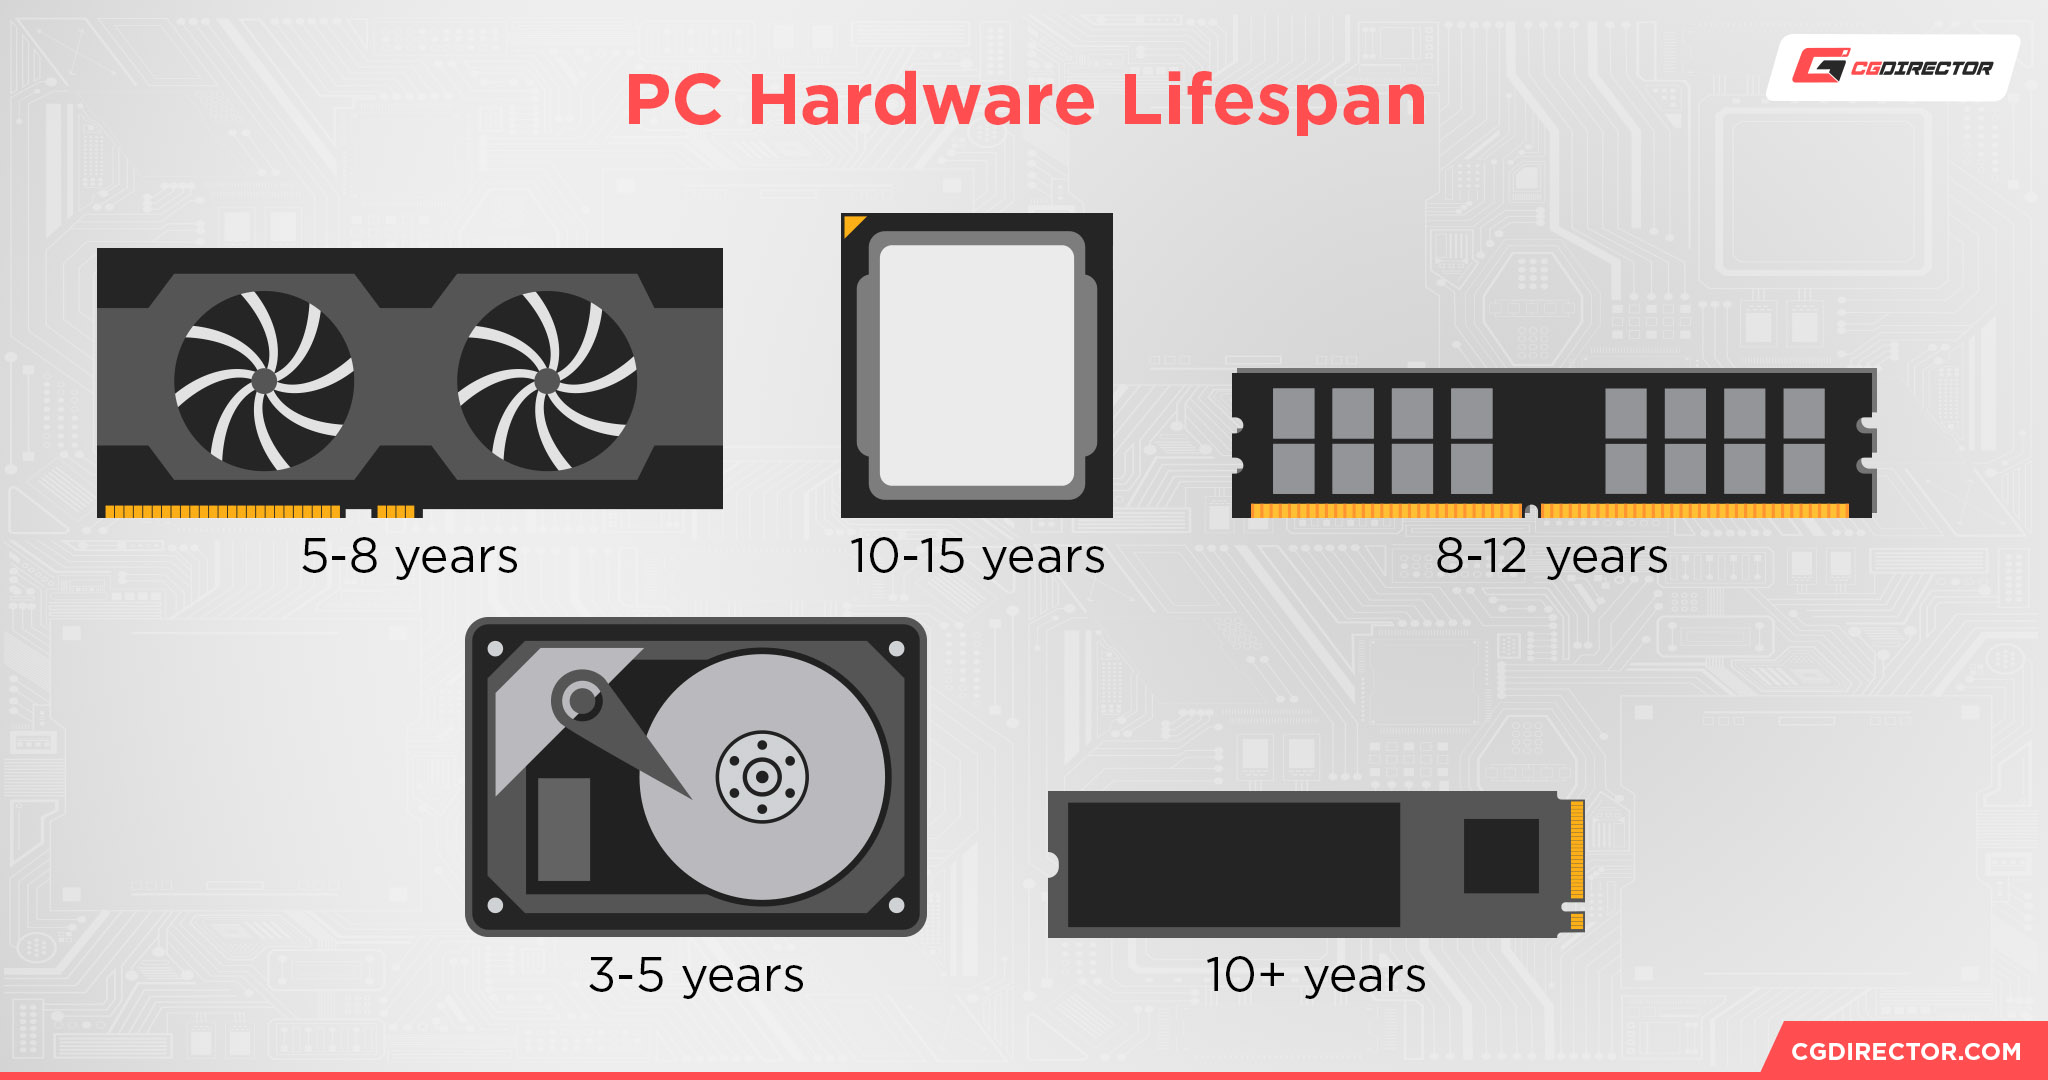 PC Hardware Lifespan